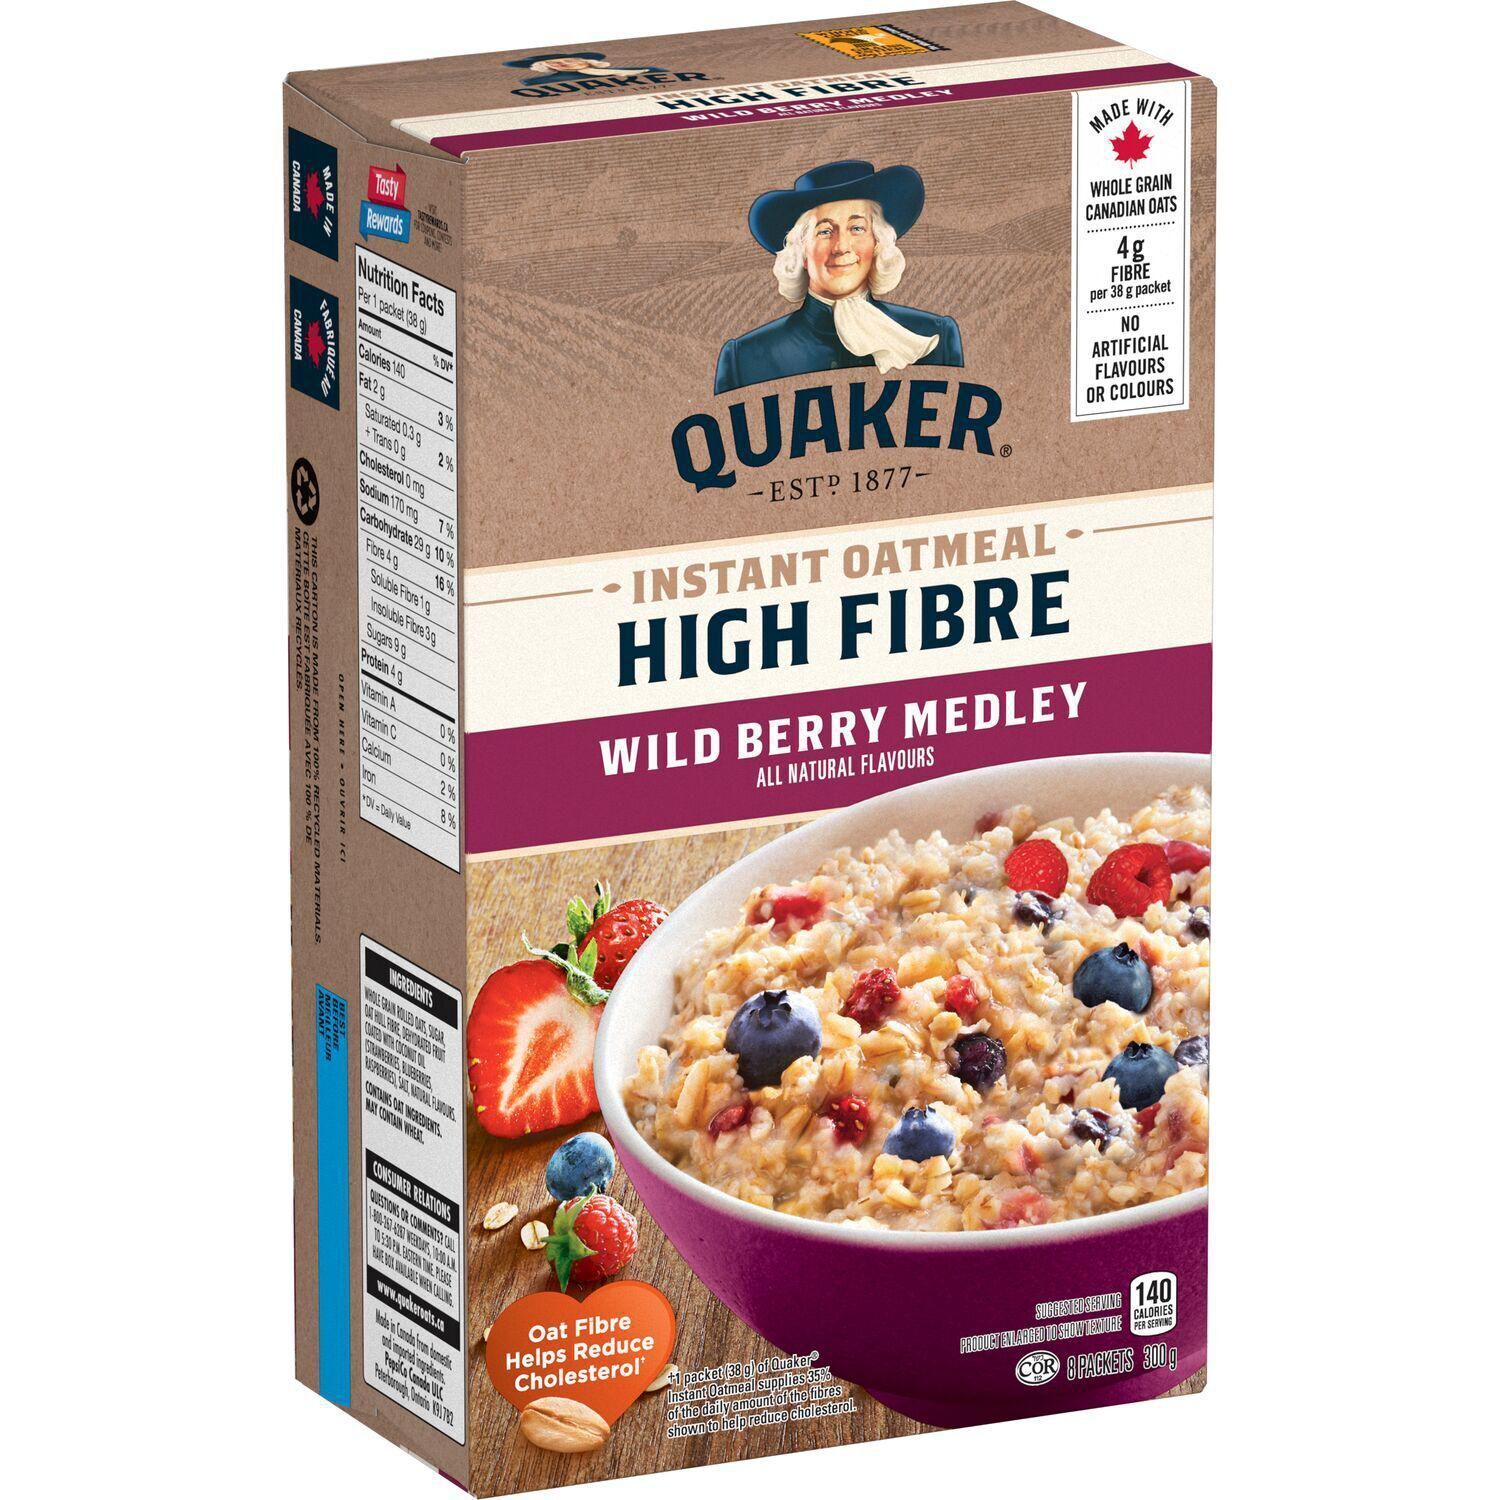 9 X Quaker High Fibre Wild Berry Medley Instant Oatmeal 300g Each -8 packets/Box - $49.35